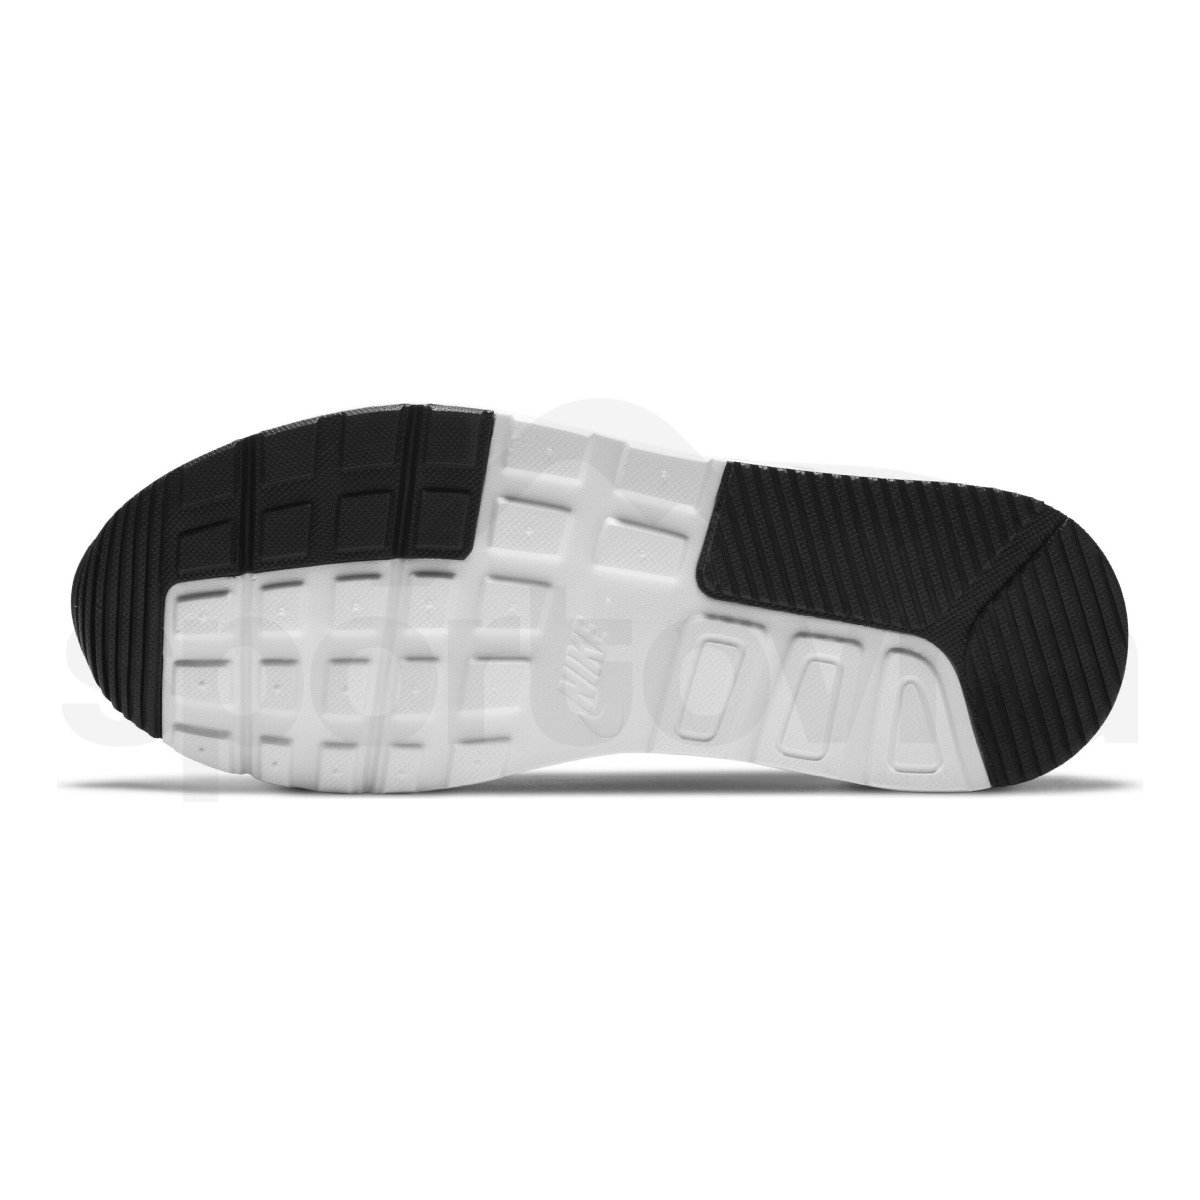 Obuv Nike Air Max SC W - černá/bílá